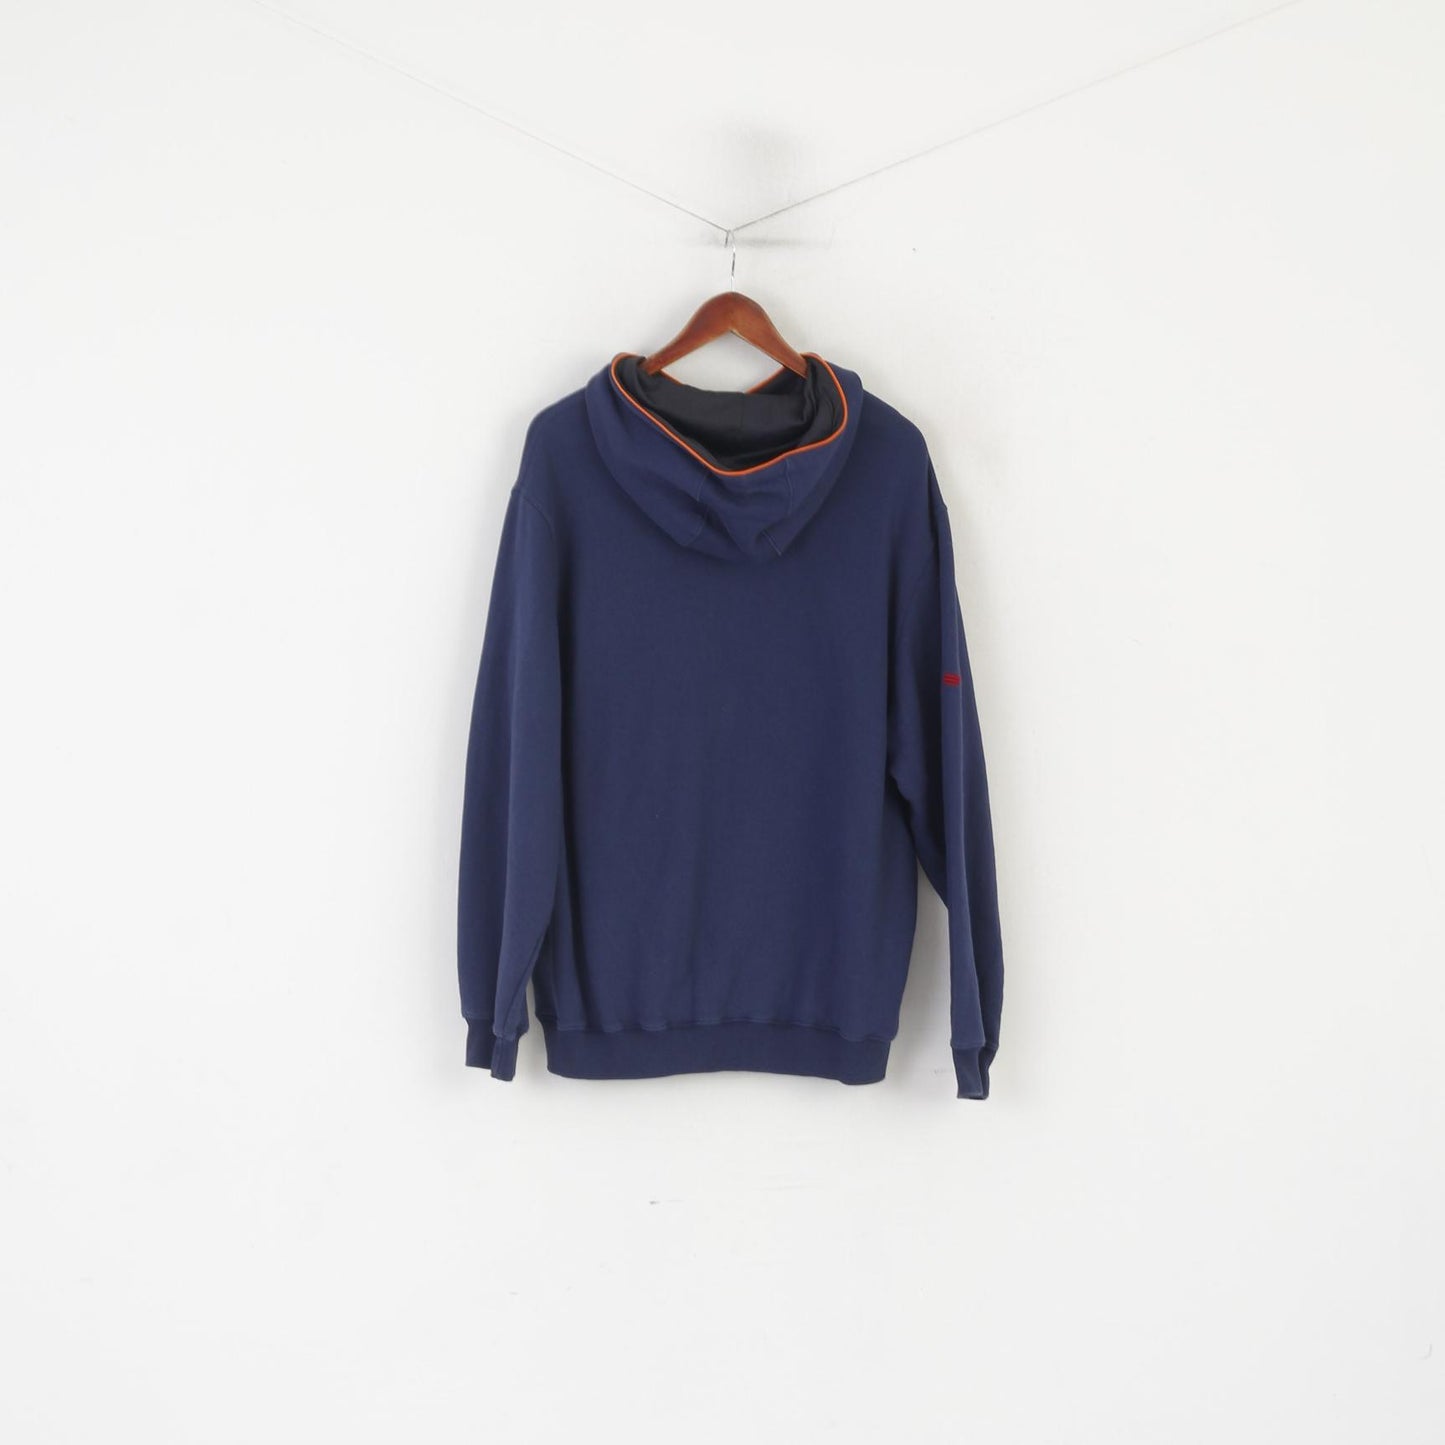 Adidas Men L 192 Sweatshirt Navy Vintage Cotton Hooded Kangaroo Pocket Top